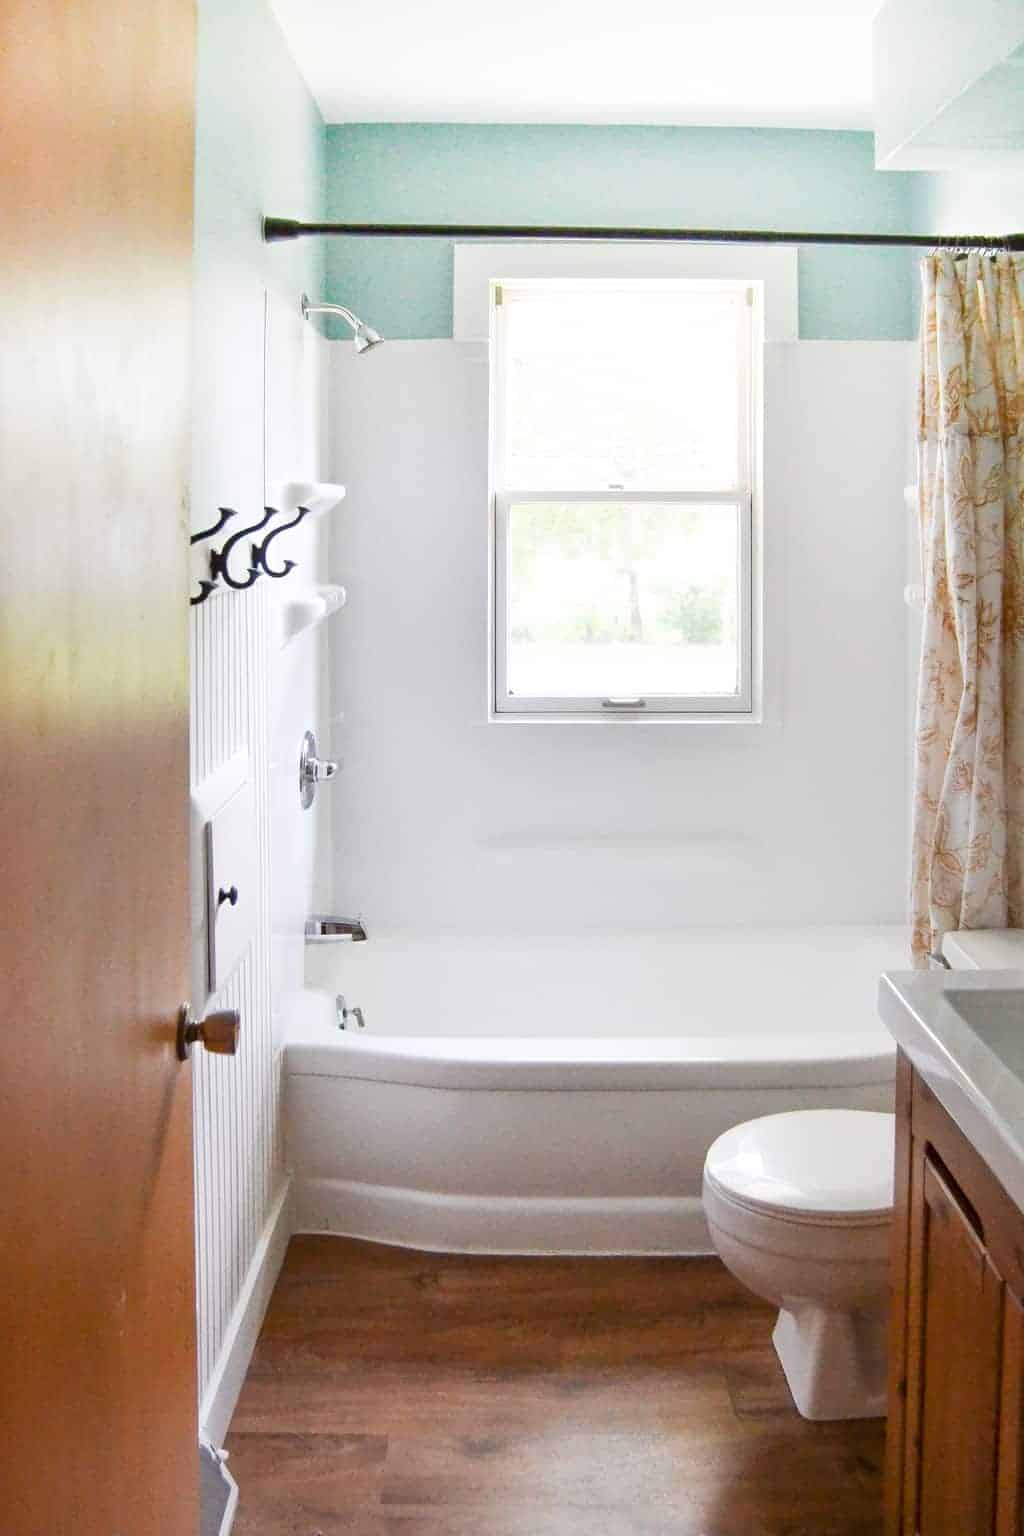 How To Paint A Bathtub Easily, How To Paint Over Acrylic Bathtub